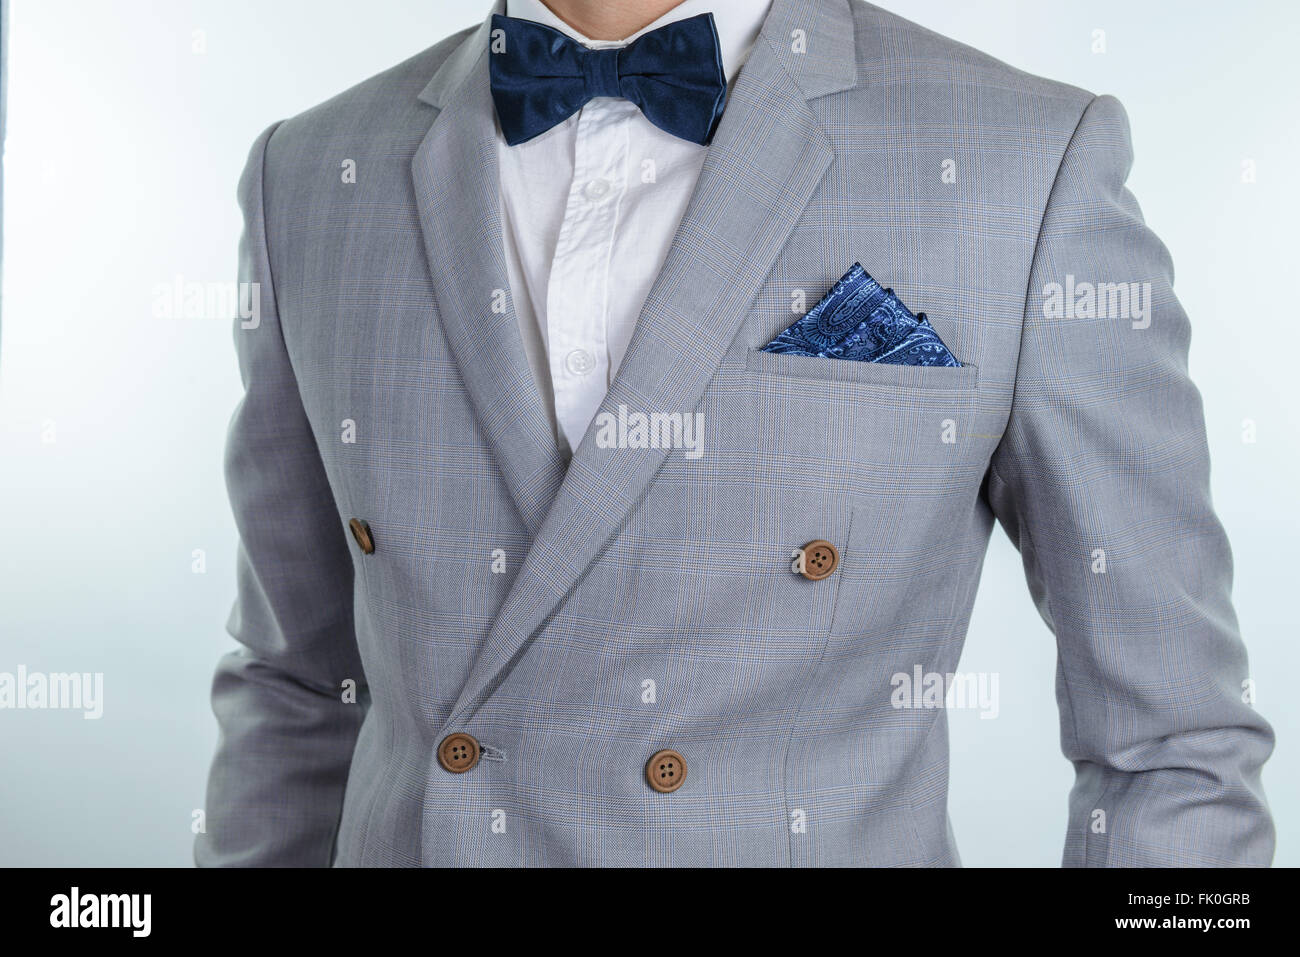 L'homme en costume gris, texture plaid bleu, nœud papillon et pocket square,  Close up fond blanc Photo Stock - Alamy